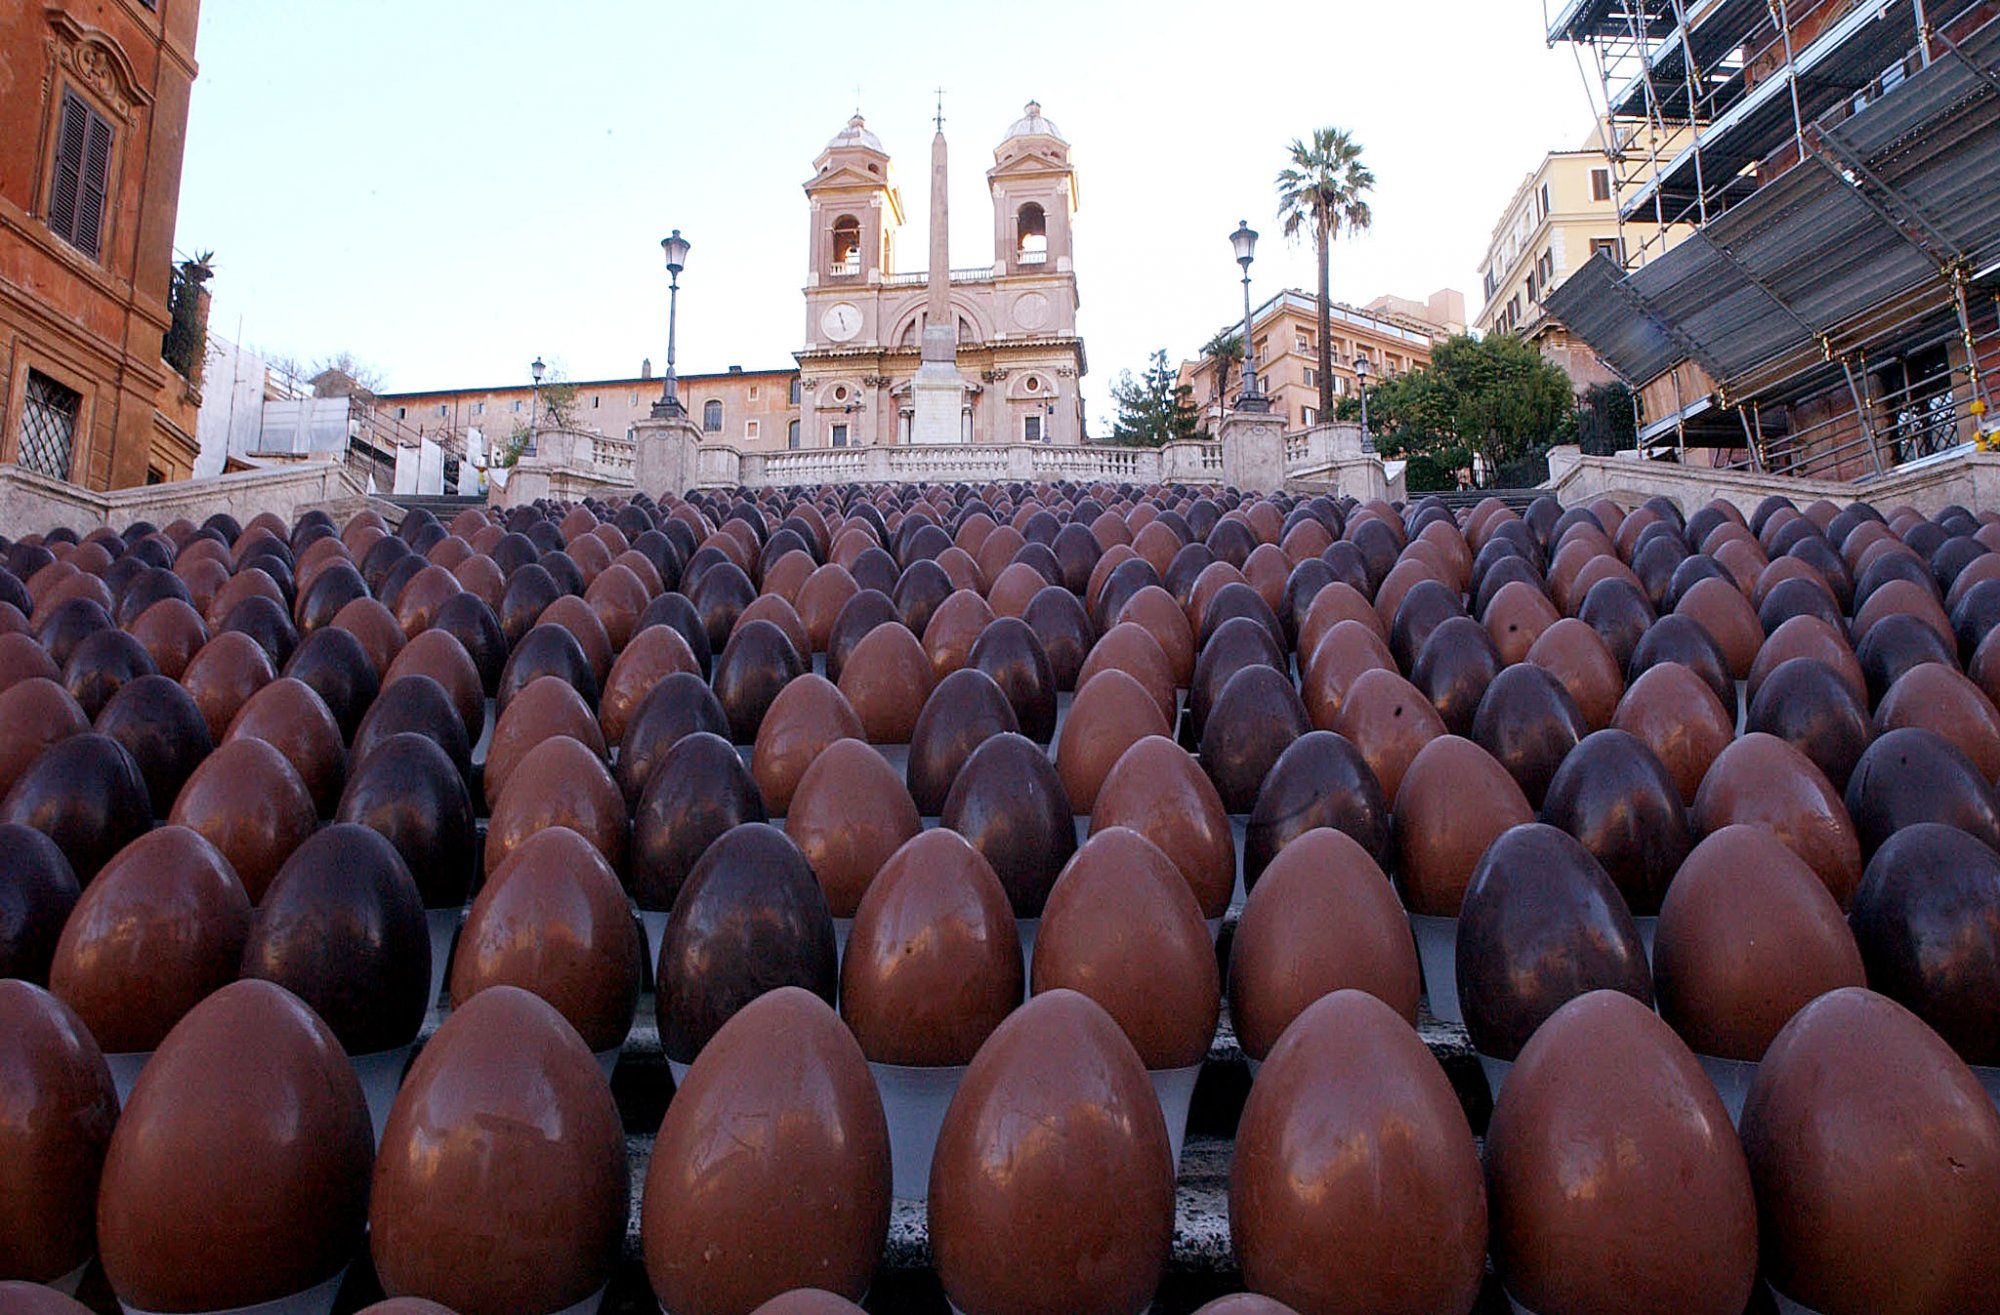 Σοκολάτα: Τα πασχαλινά αυγά είναι πιο ακριβά φέτος - Η κλιματική αλλαγή πλήττει τις καλλιέργειες